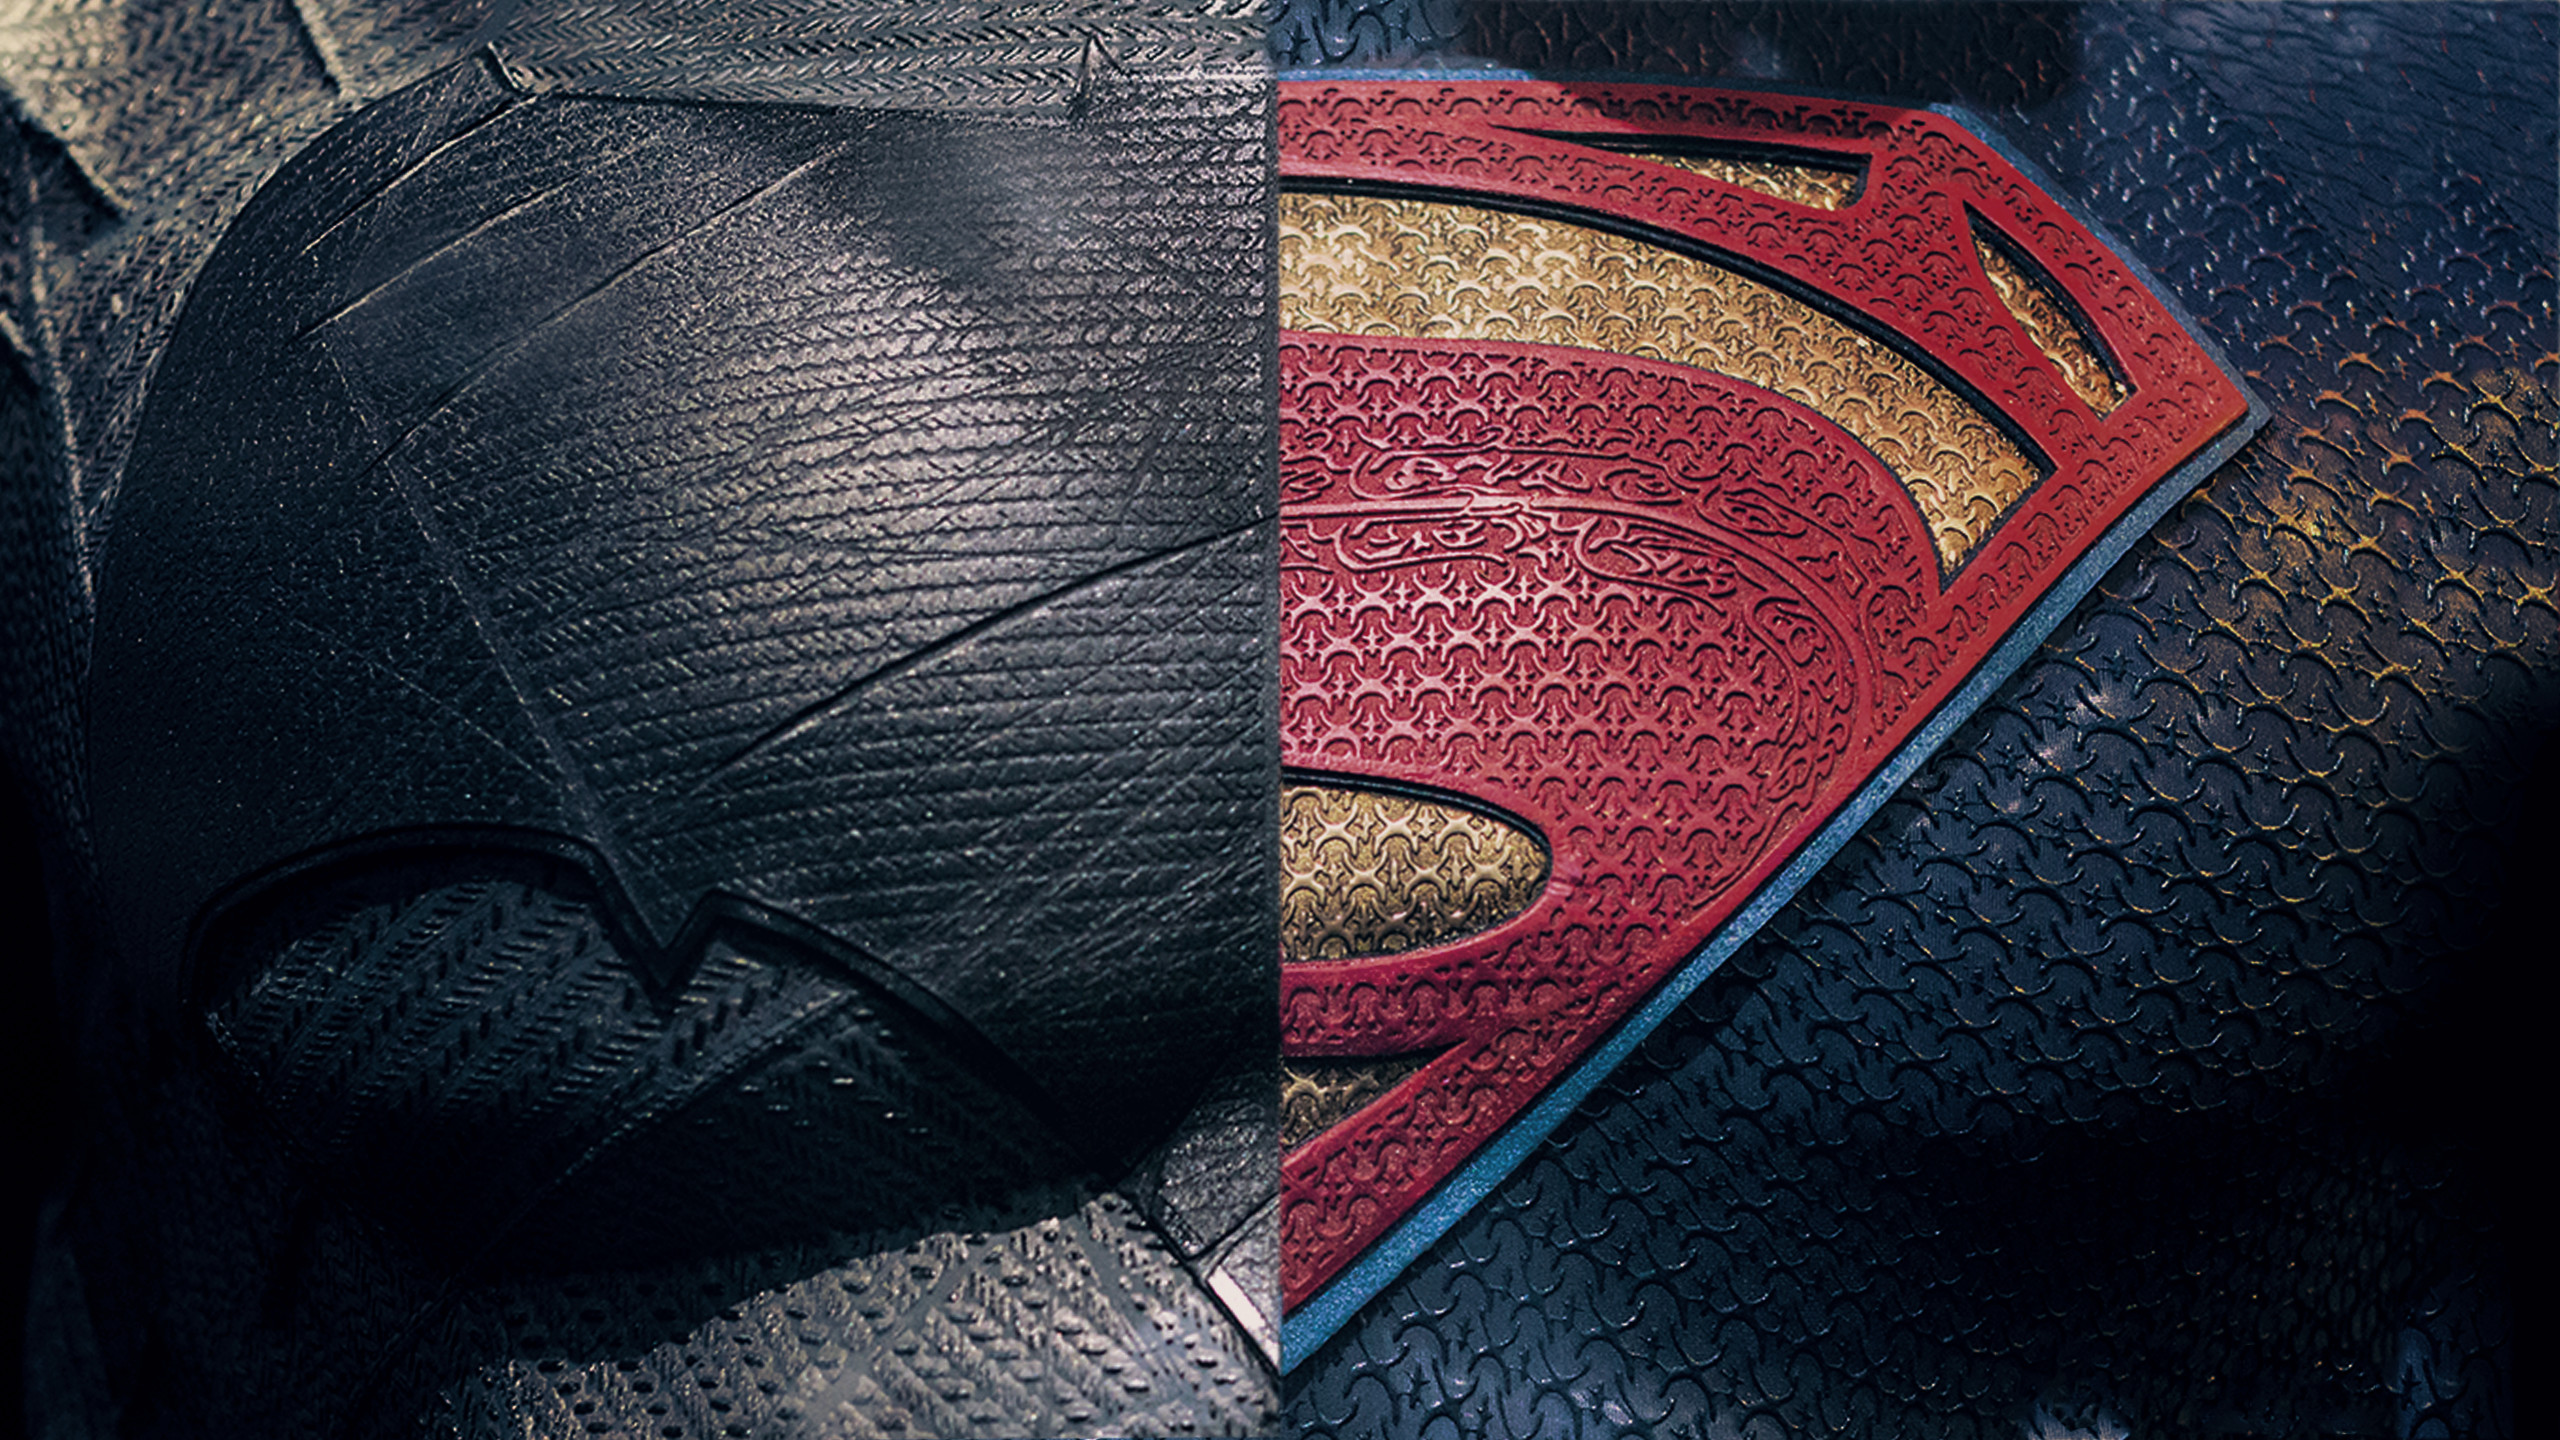 2560x1440 batman vs superman movie best hd wallpaper ...